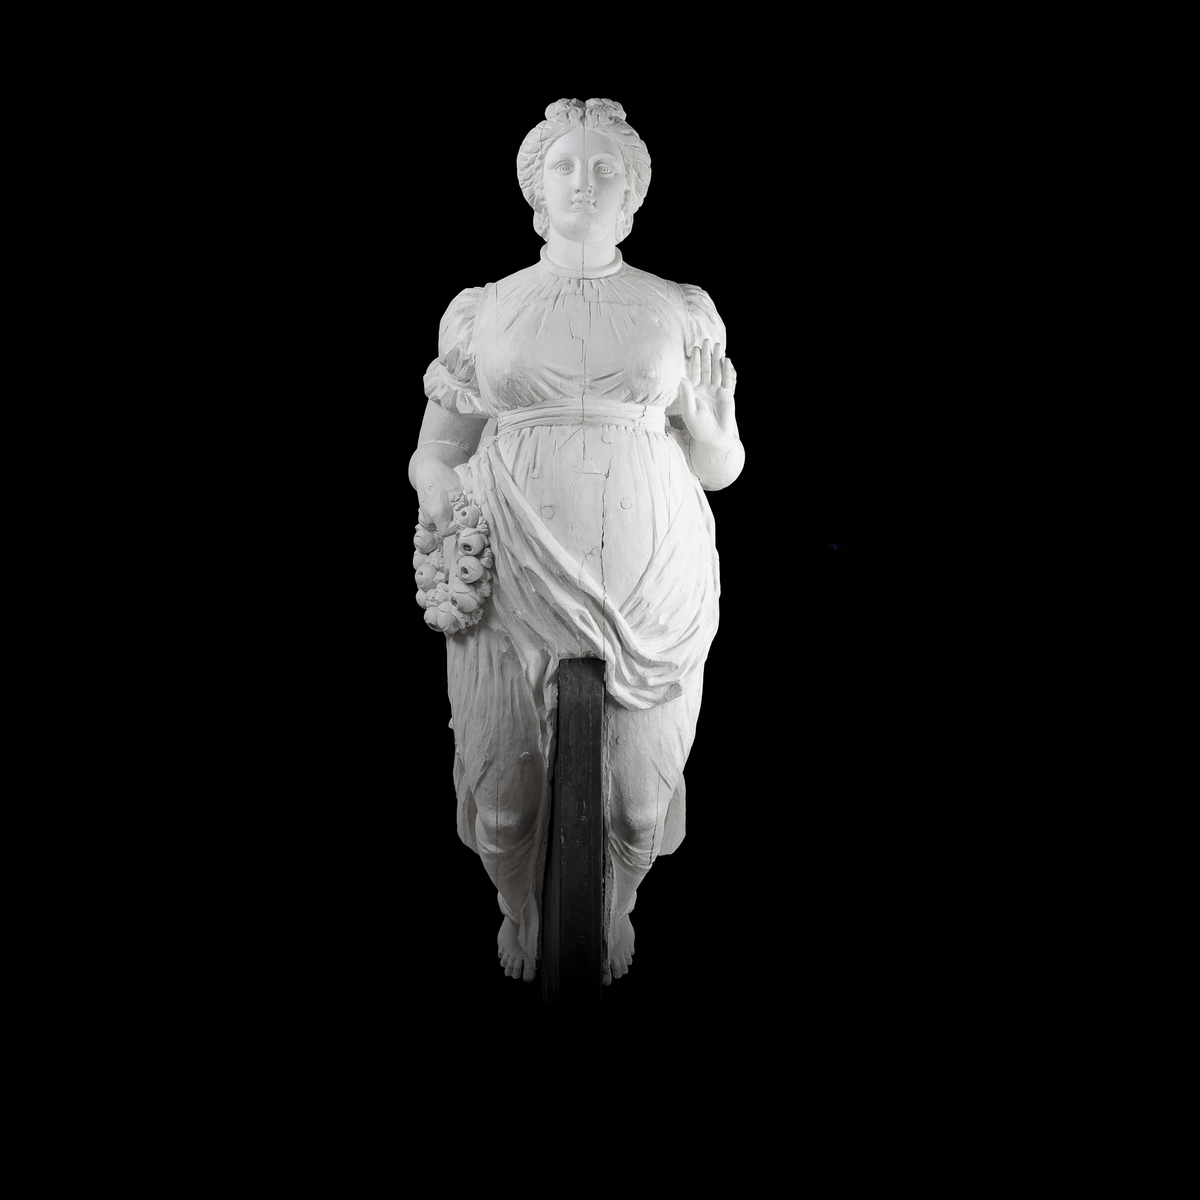 Galjonsbild tillhörande fregatten Fröja.
Kvinnofigur med blomsterkrans i högra handen. Vänstra armen hålls framåt i midjehöjd med handflatan framåt/uppåt. Figuren bär klänning med hög åtsnörd midja, åtsnörd vid överarmar och hals.